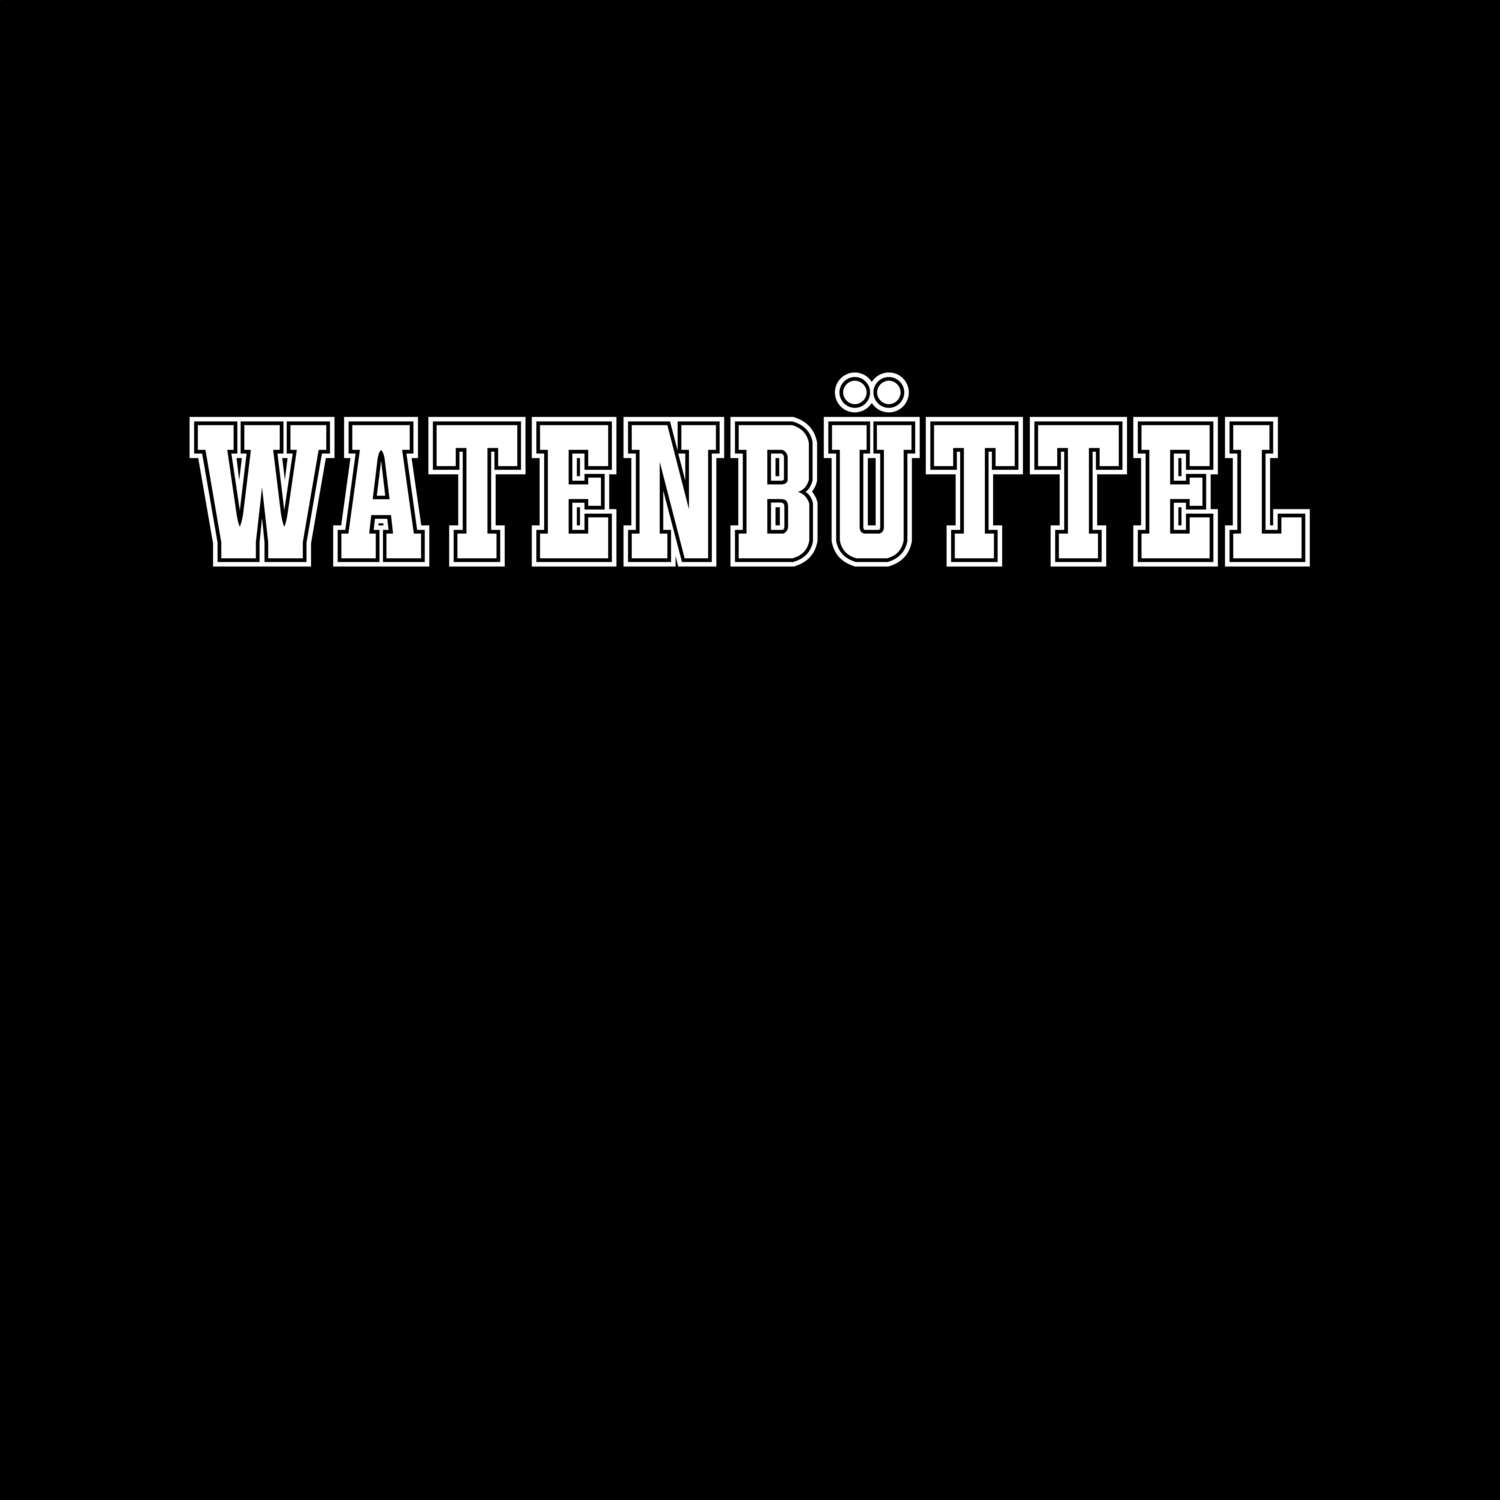 Watenbüttel T-Shirt »Classic«